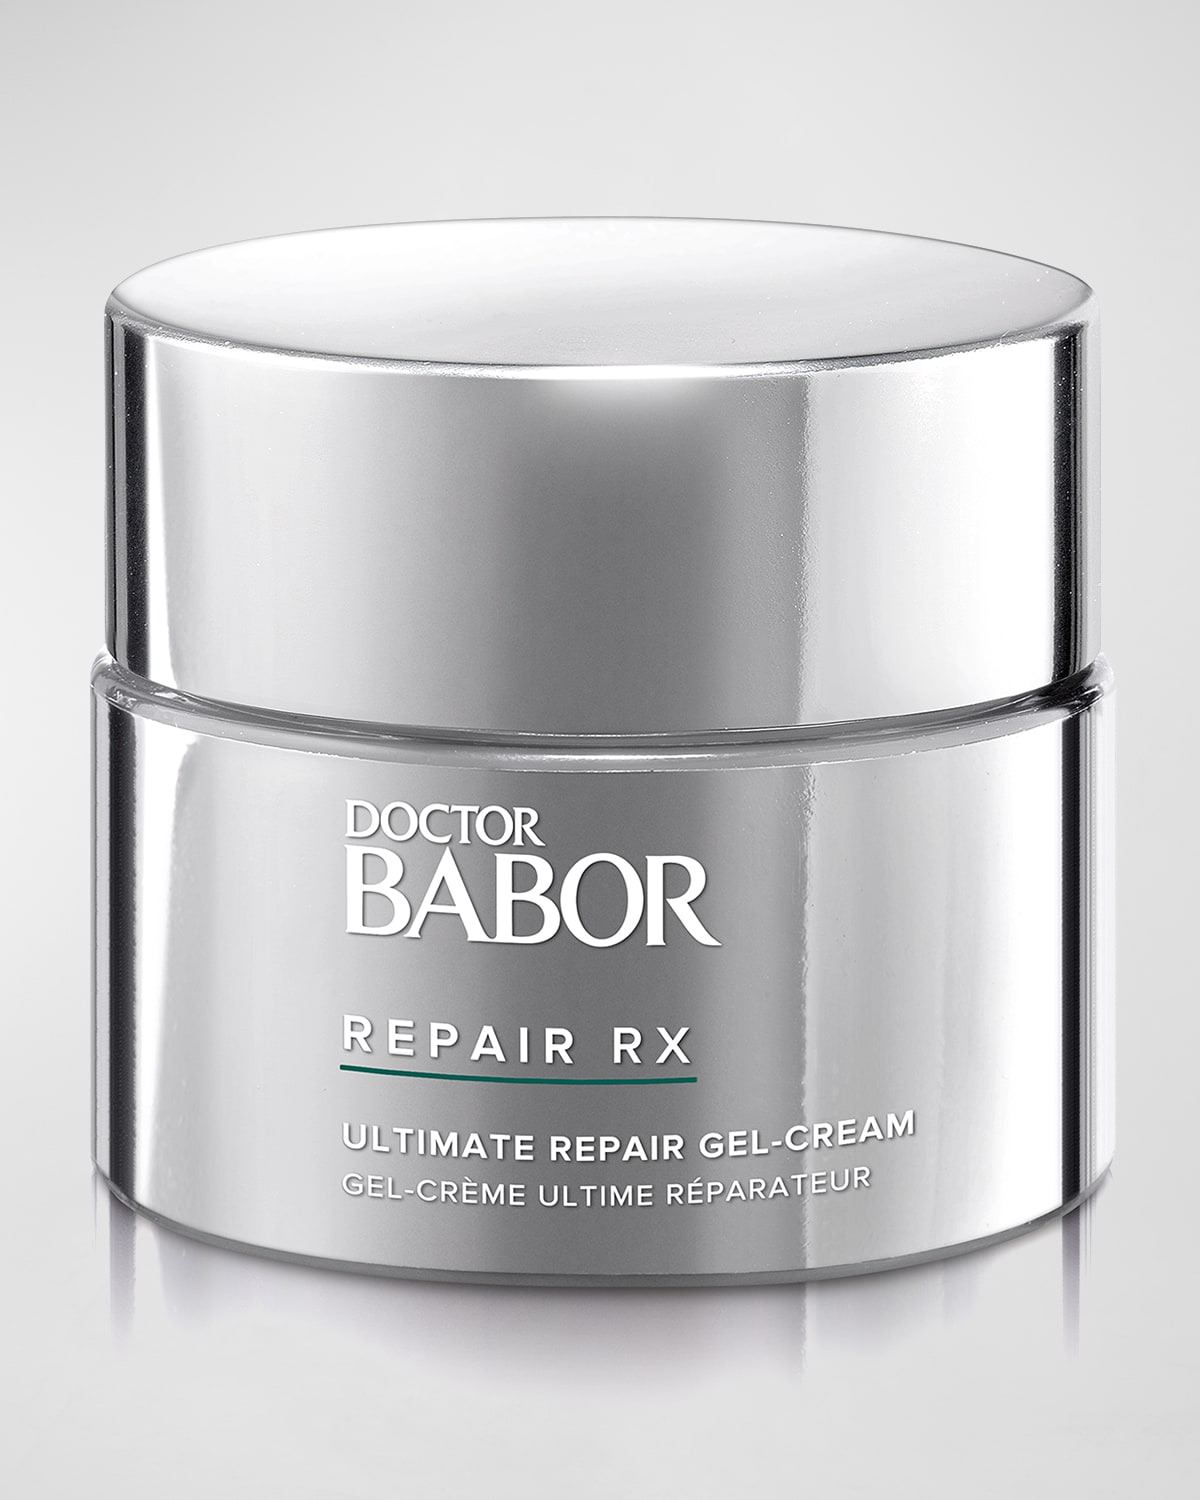 BABOR REPAIR RX Ultimate Repair Gel-Cream